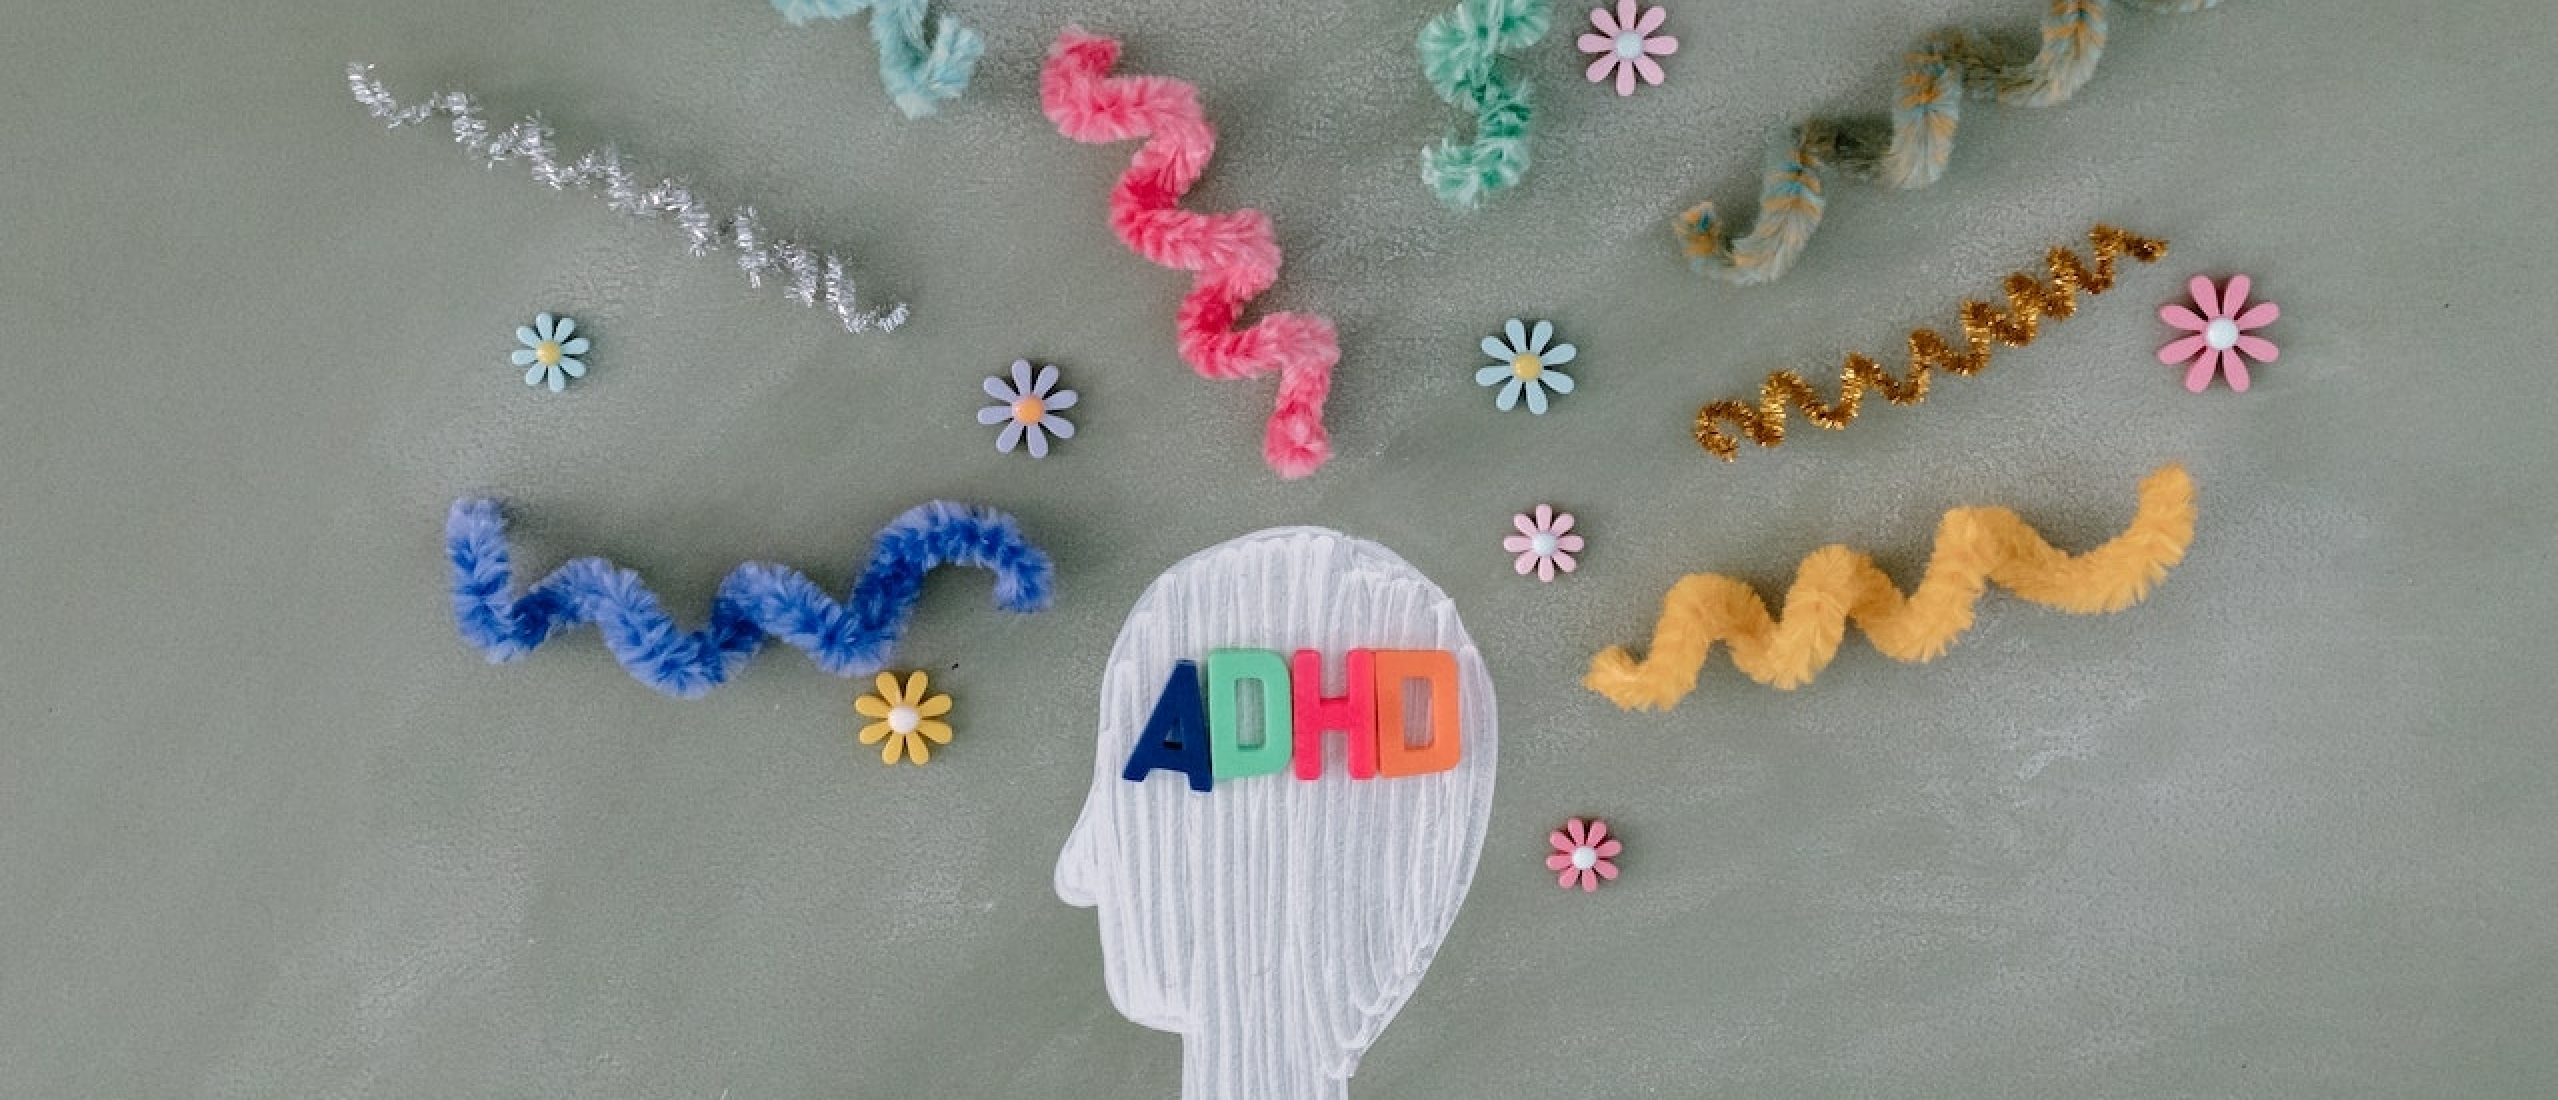 Soorten ADHD: Dit Zijn de Symptomen